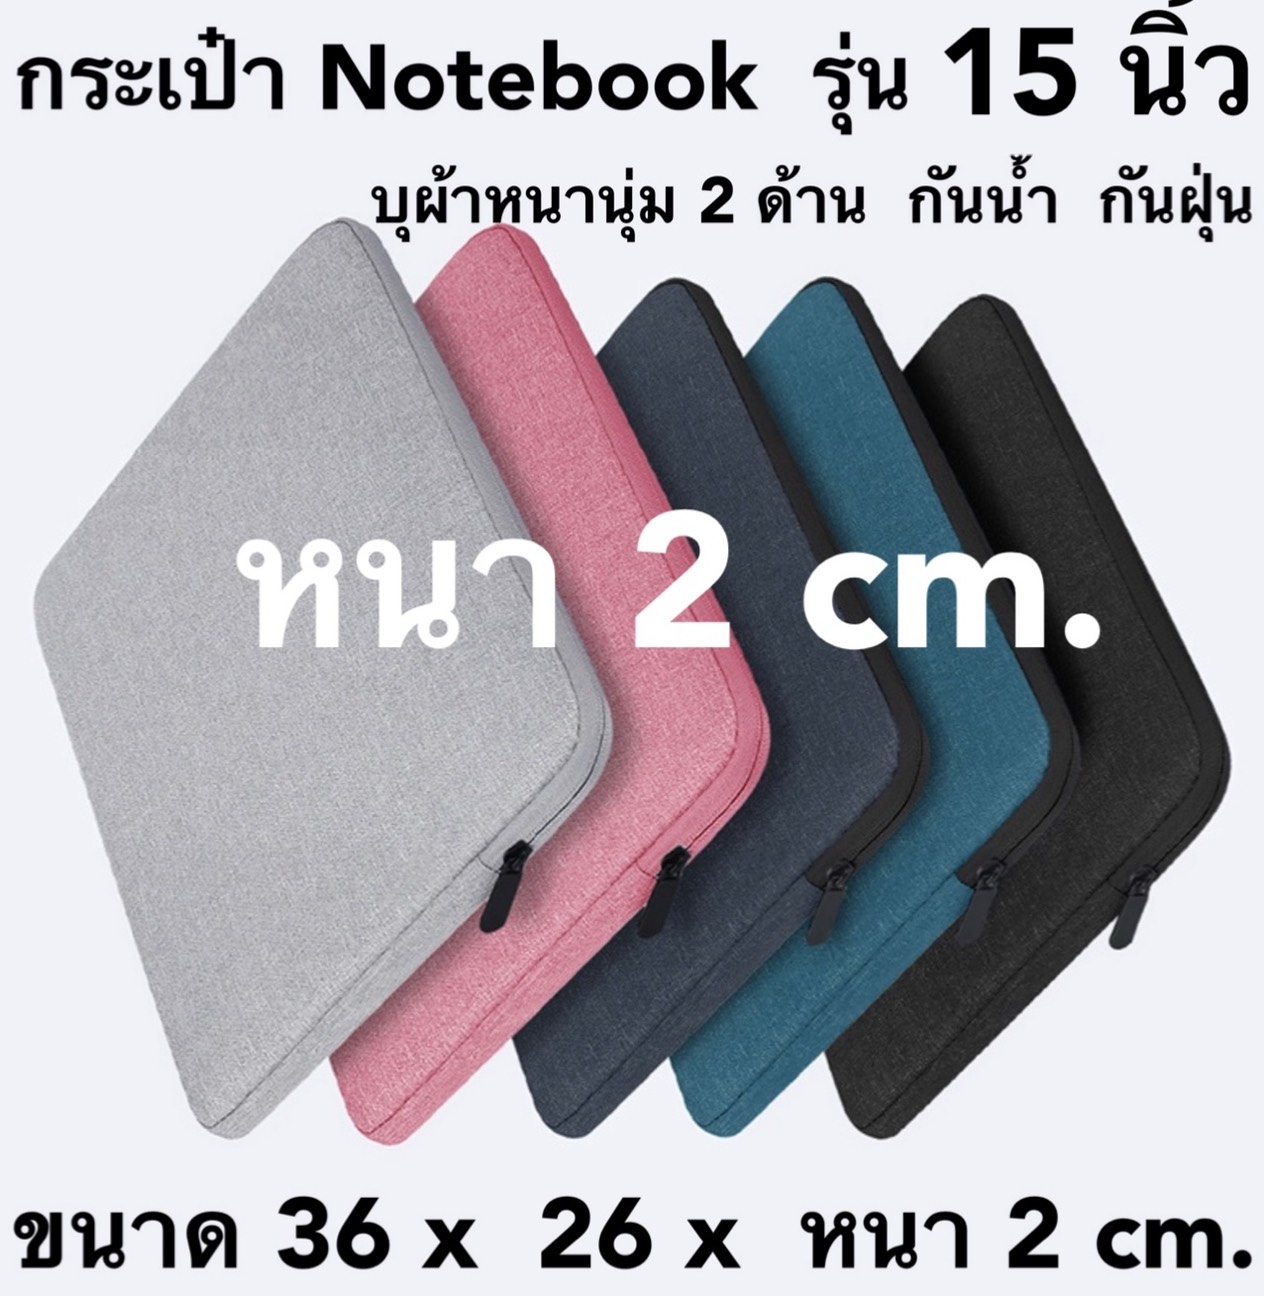 #พร้อมส่งทันที สินค้าจากไทย (95- 169 บาท ) กระเป๋าเก็บโน๊ตบุ๊ค ไอแพด ด้านในบุผ้าหนานุ่ม  มี 5 สี กันน้ำ กันฝุ่น กว้าง 38 x 28 x 2 cm.  ~   มี 5 สีค่ะ